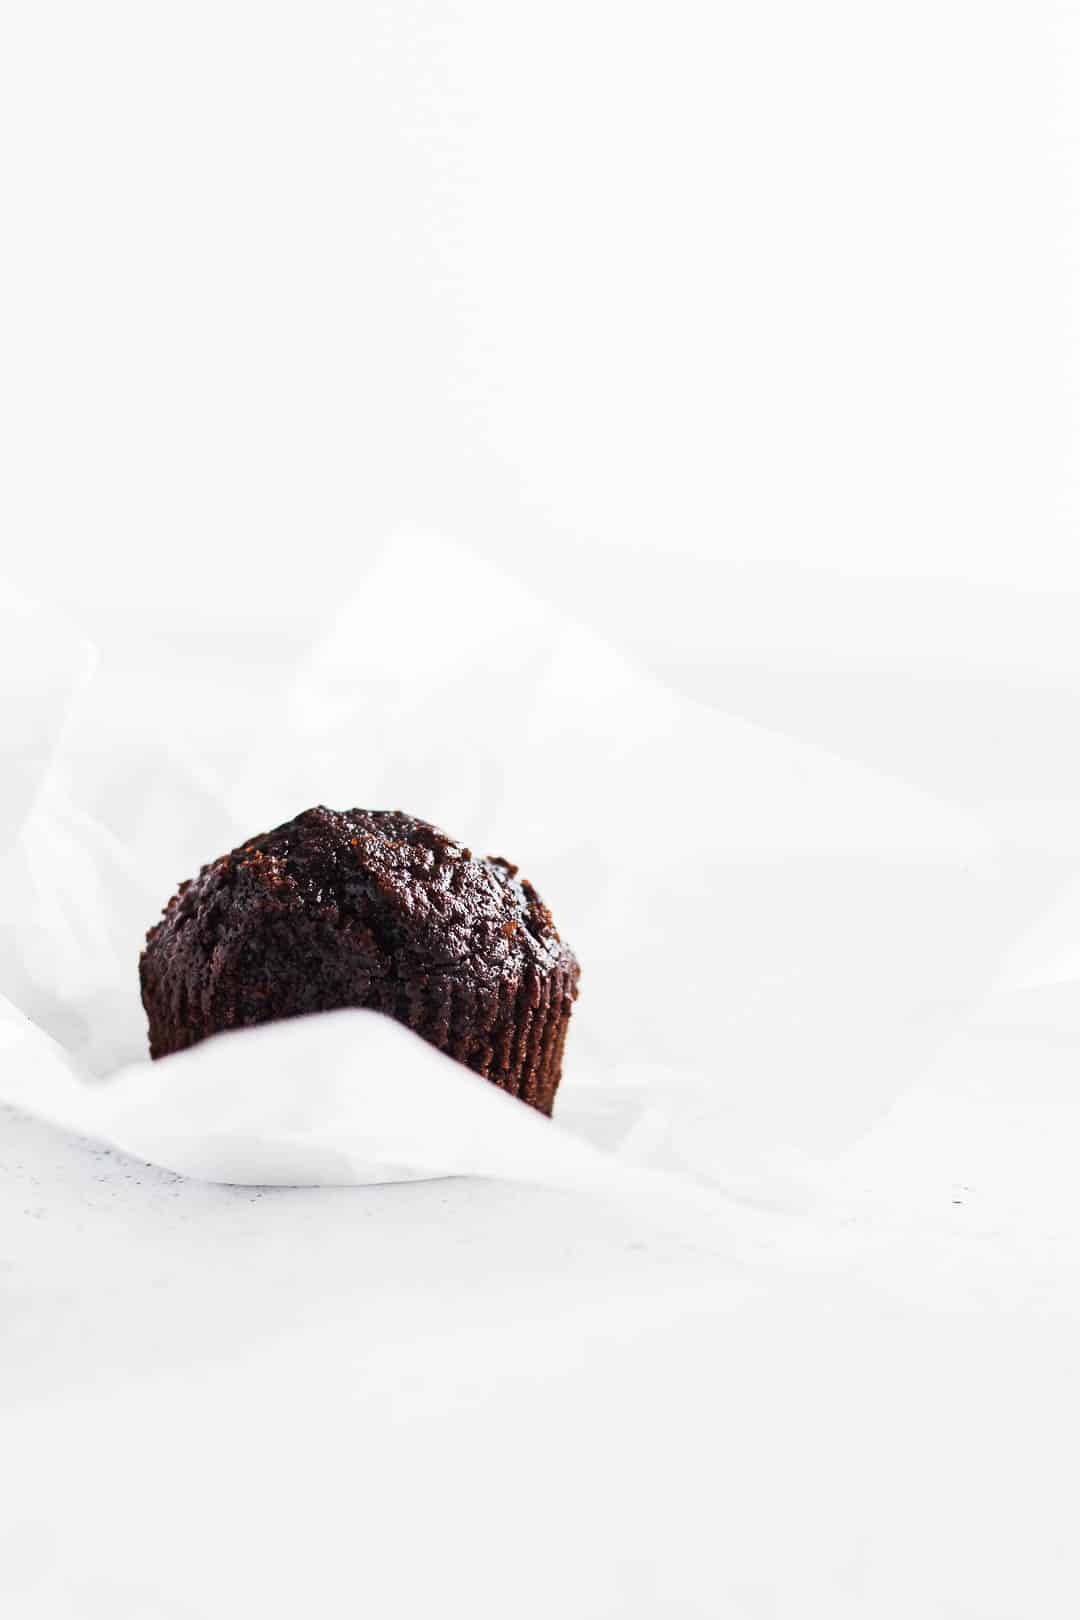 Chokolade cupcakes - opskrift på muffins med chokolade